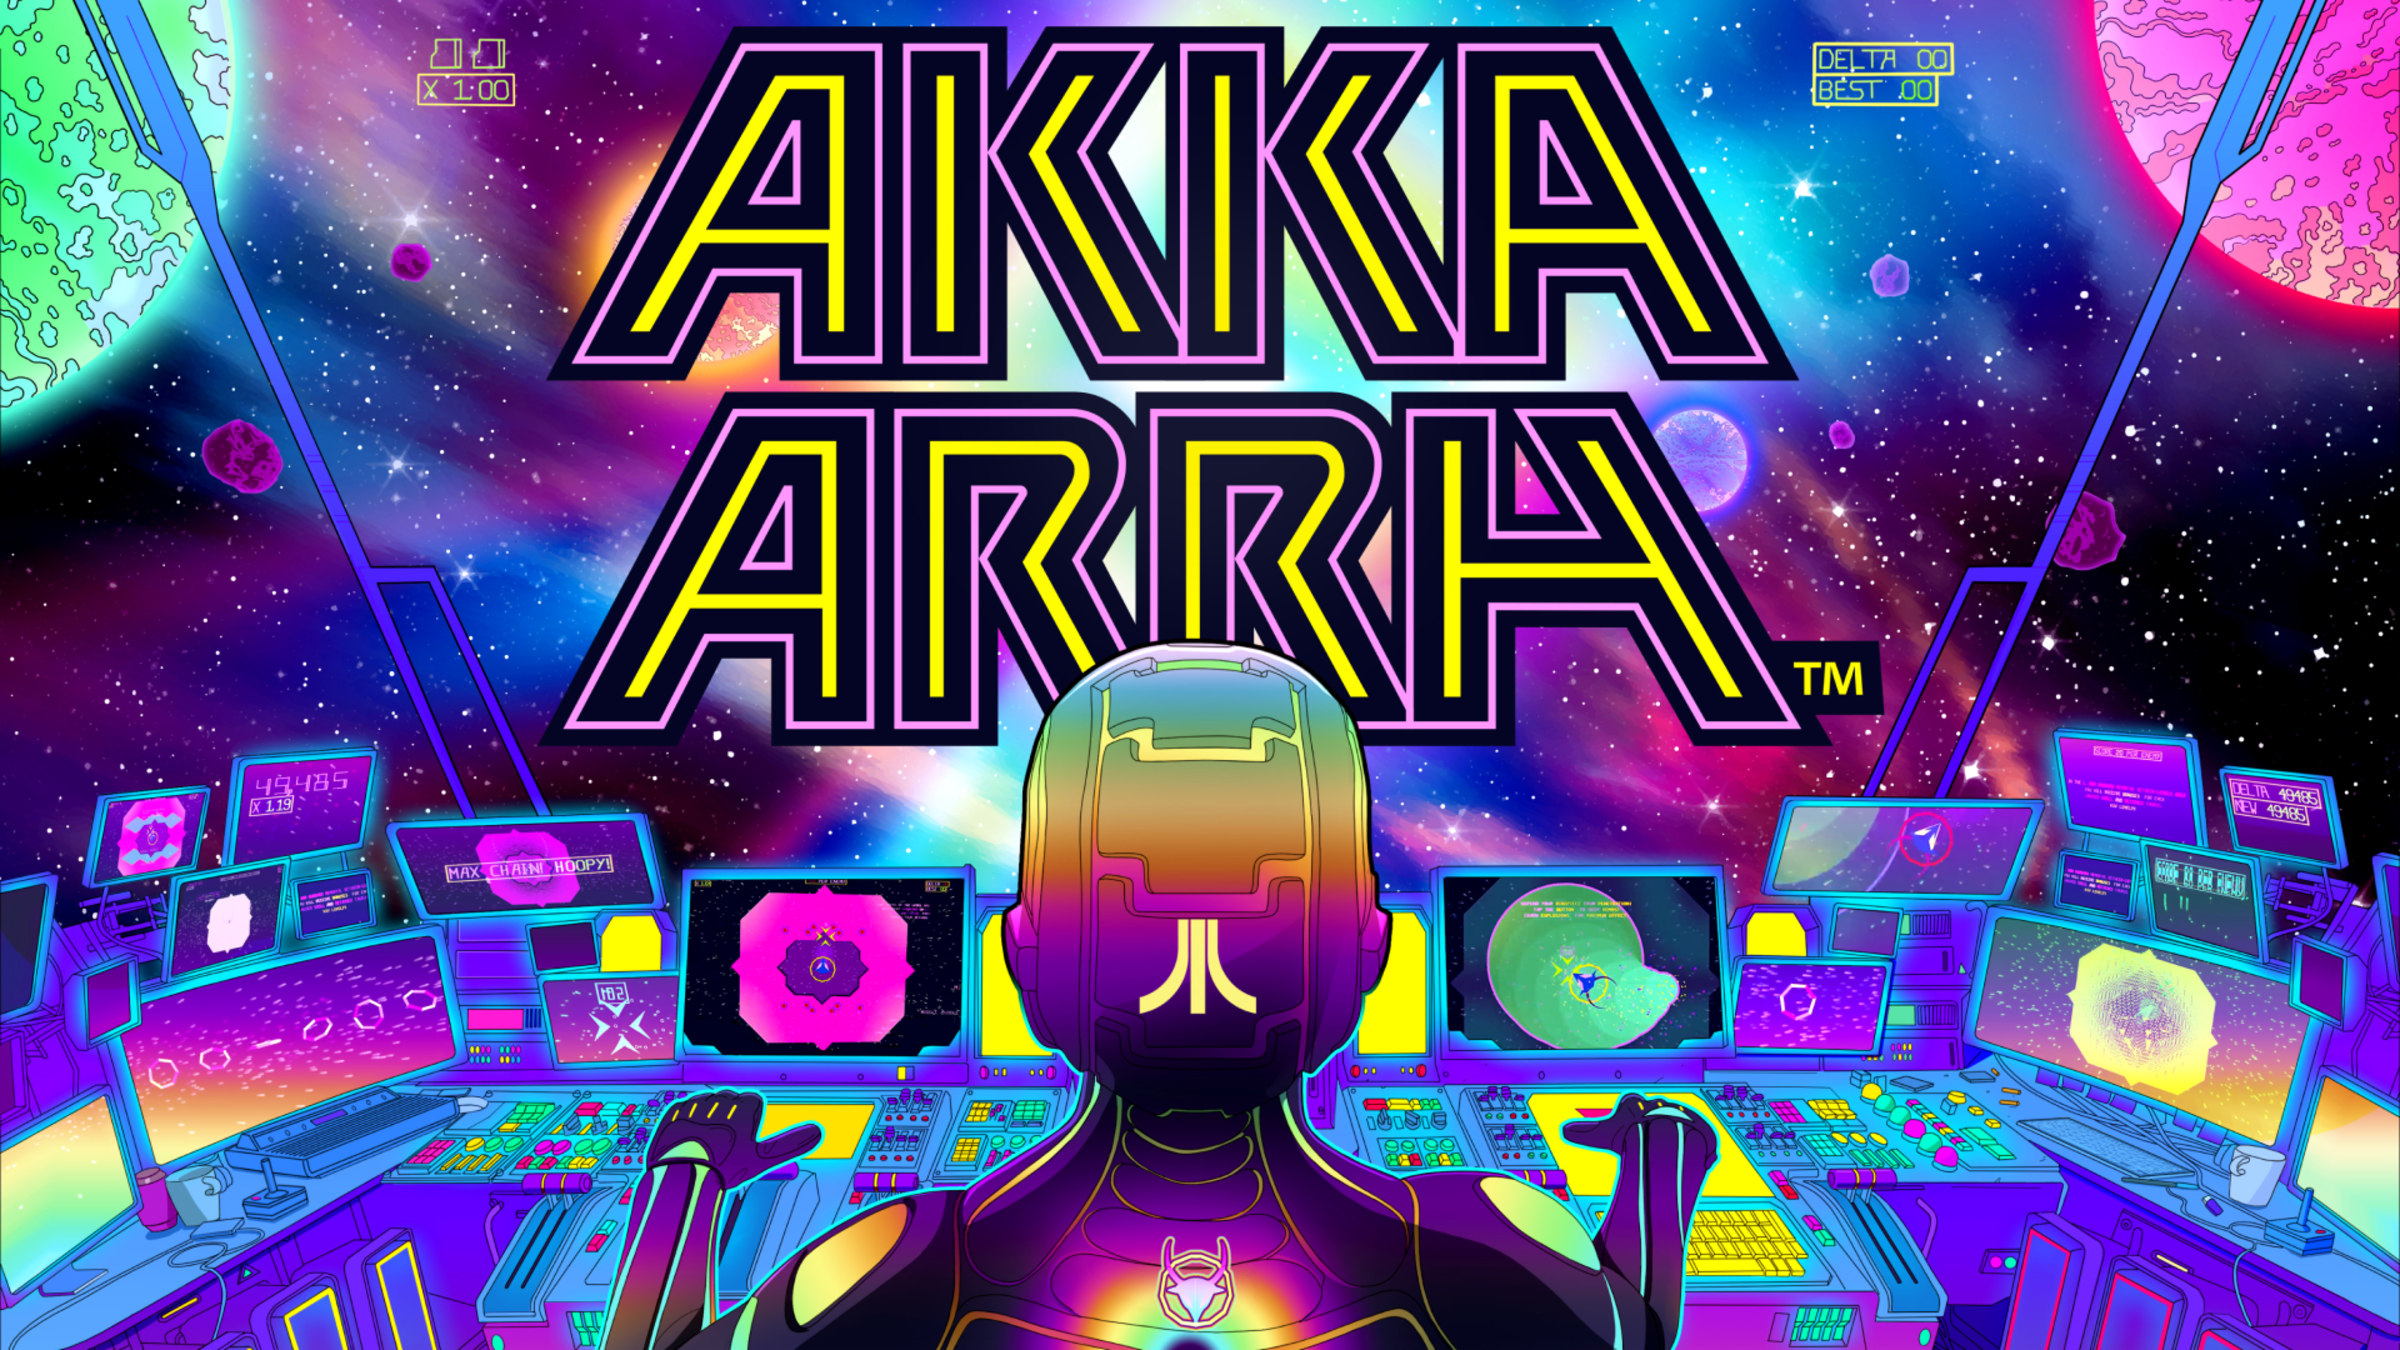 Akka Arrh PS5 Version Full Game Setup Free Download